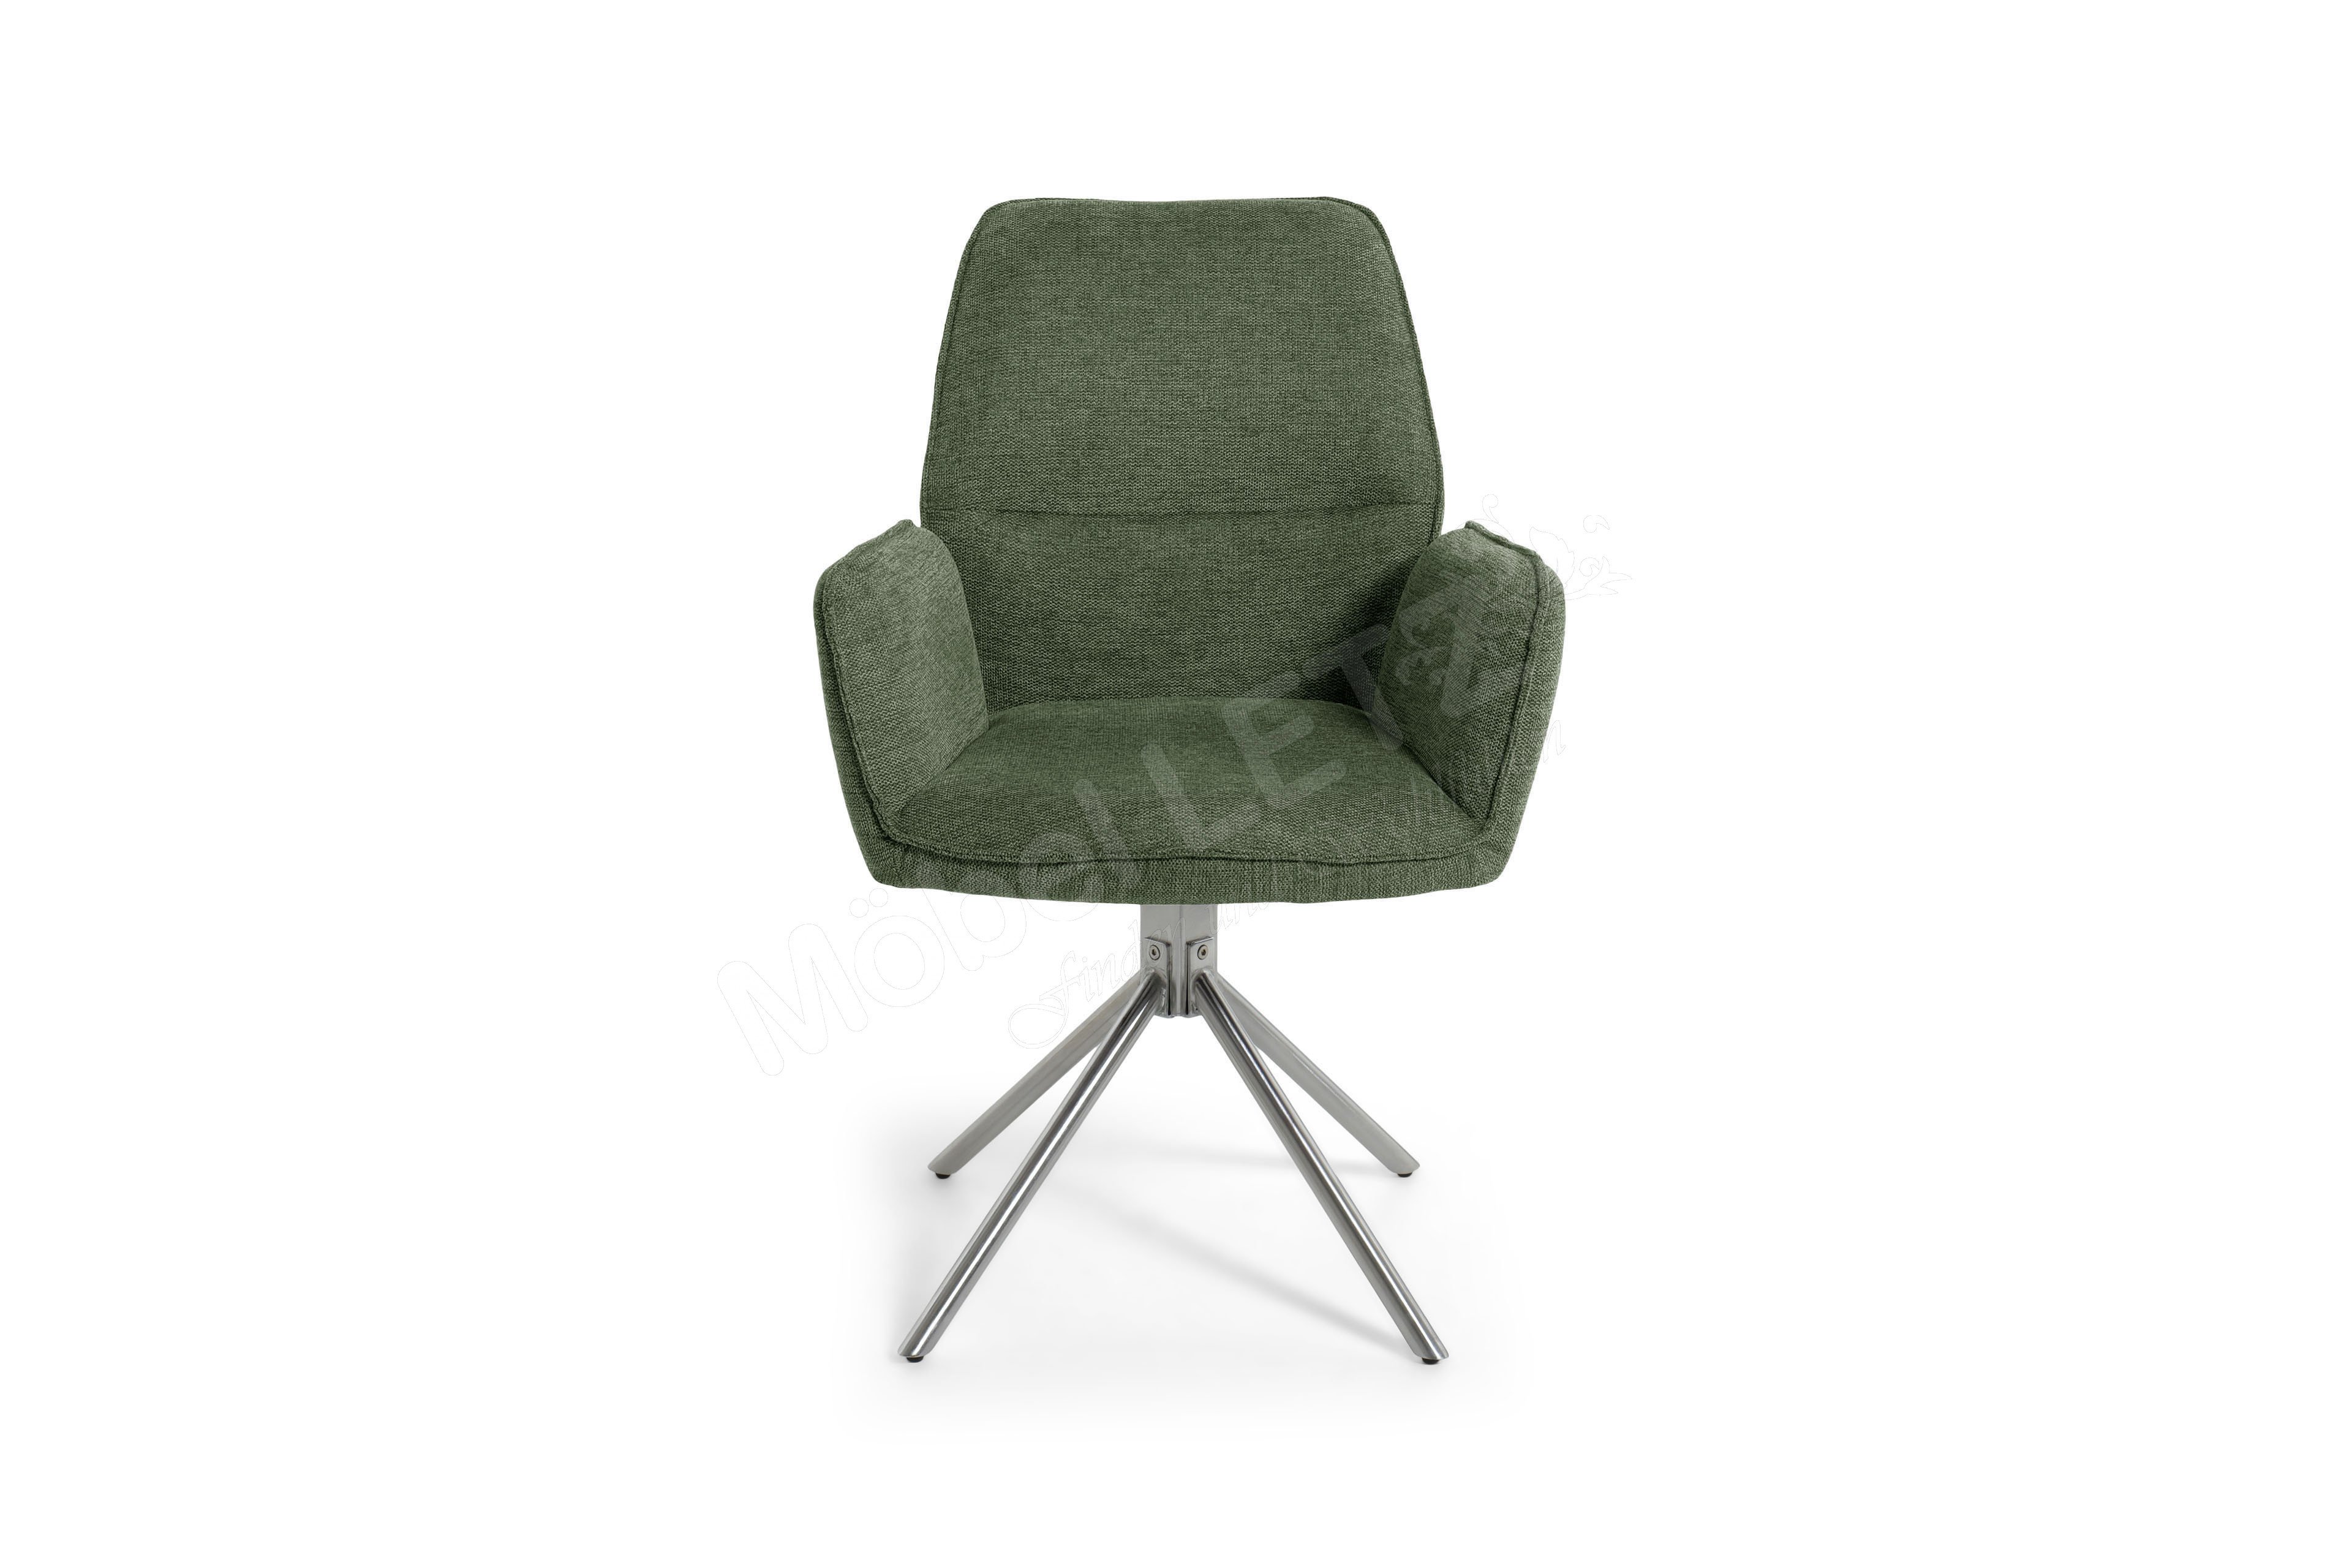 Greyton Möbel in furniture Letz Ihr Olive-Grün Online-Shop - MCA Stuhl |